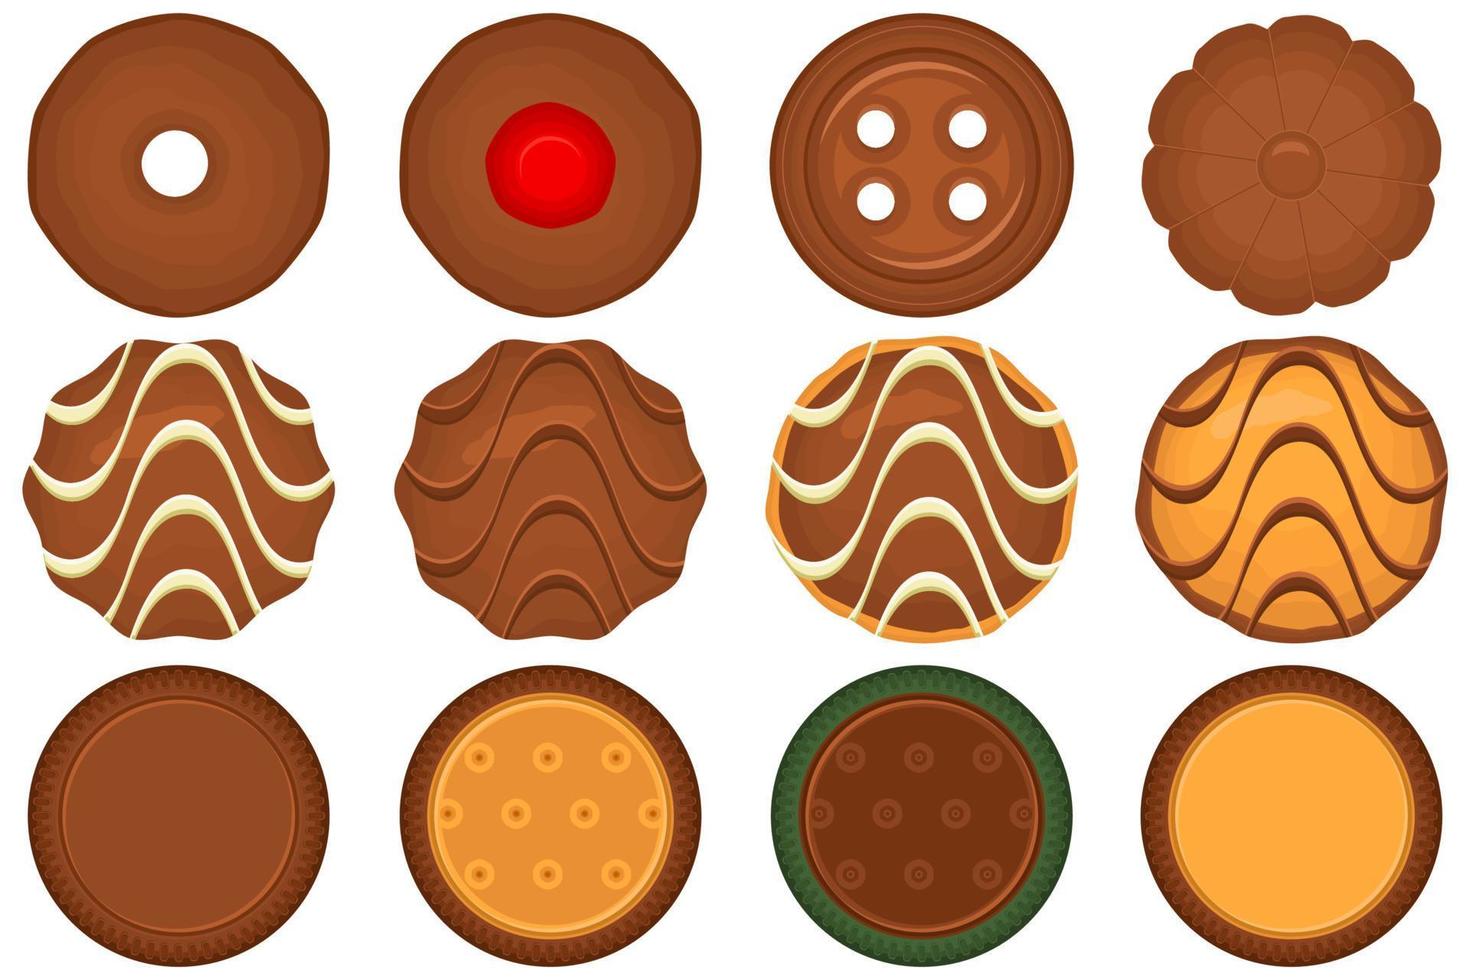 groot reeks eigengemaakt koekje verschillend smaak in gebakje biscuit vector